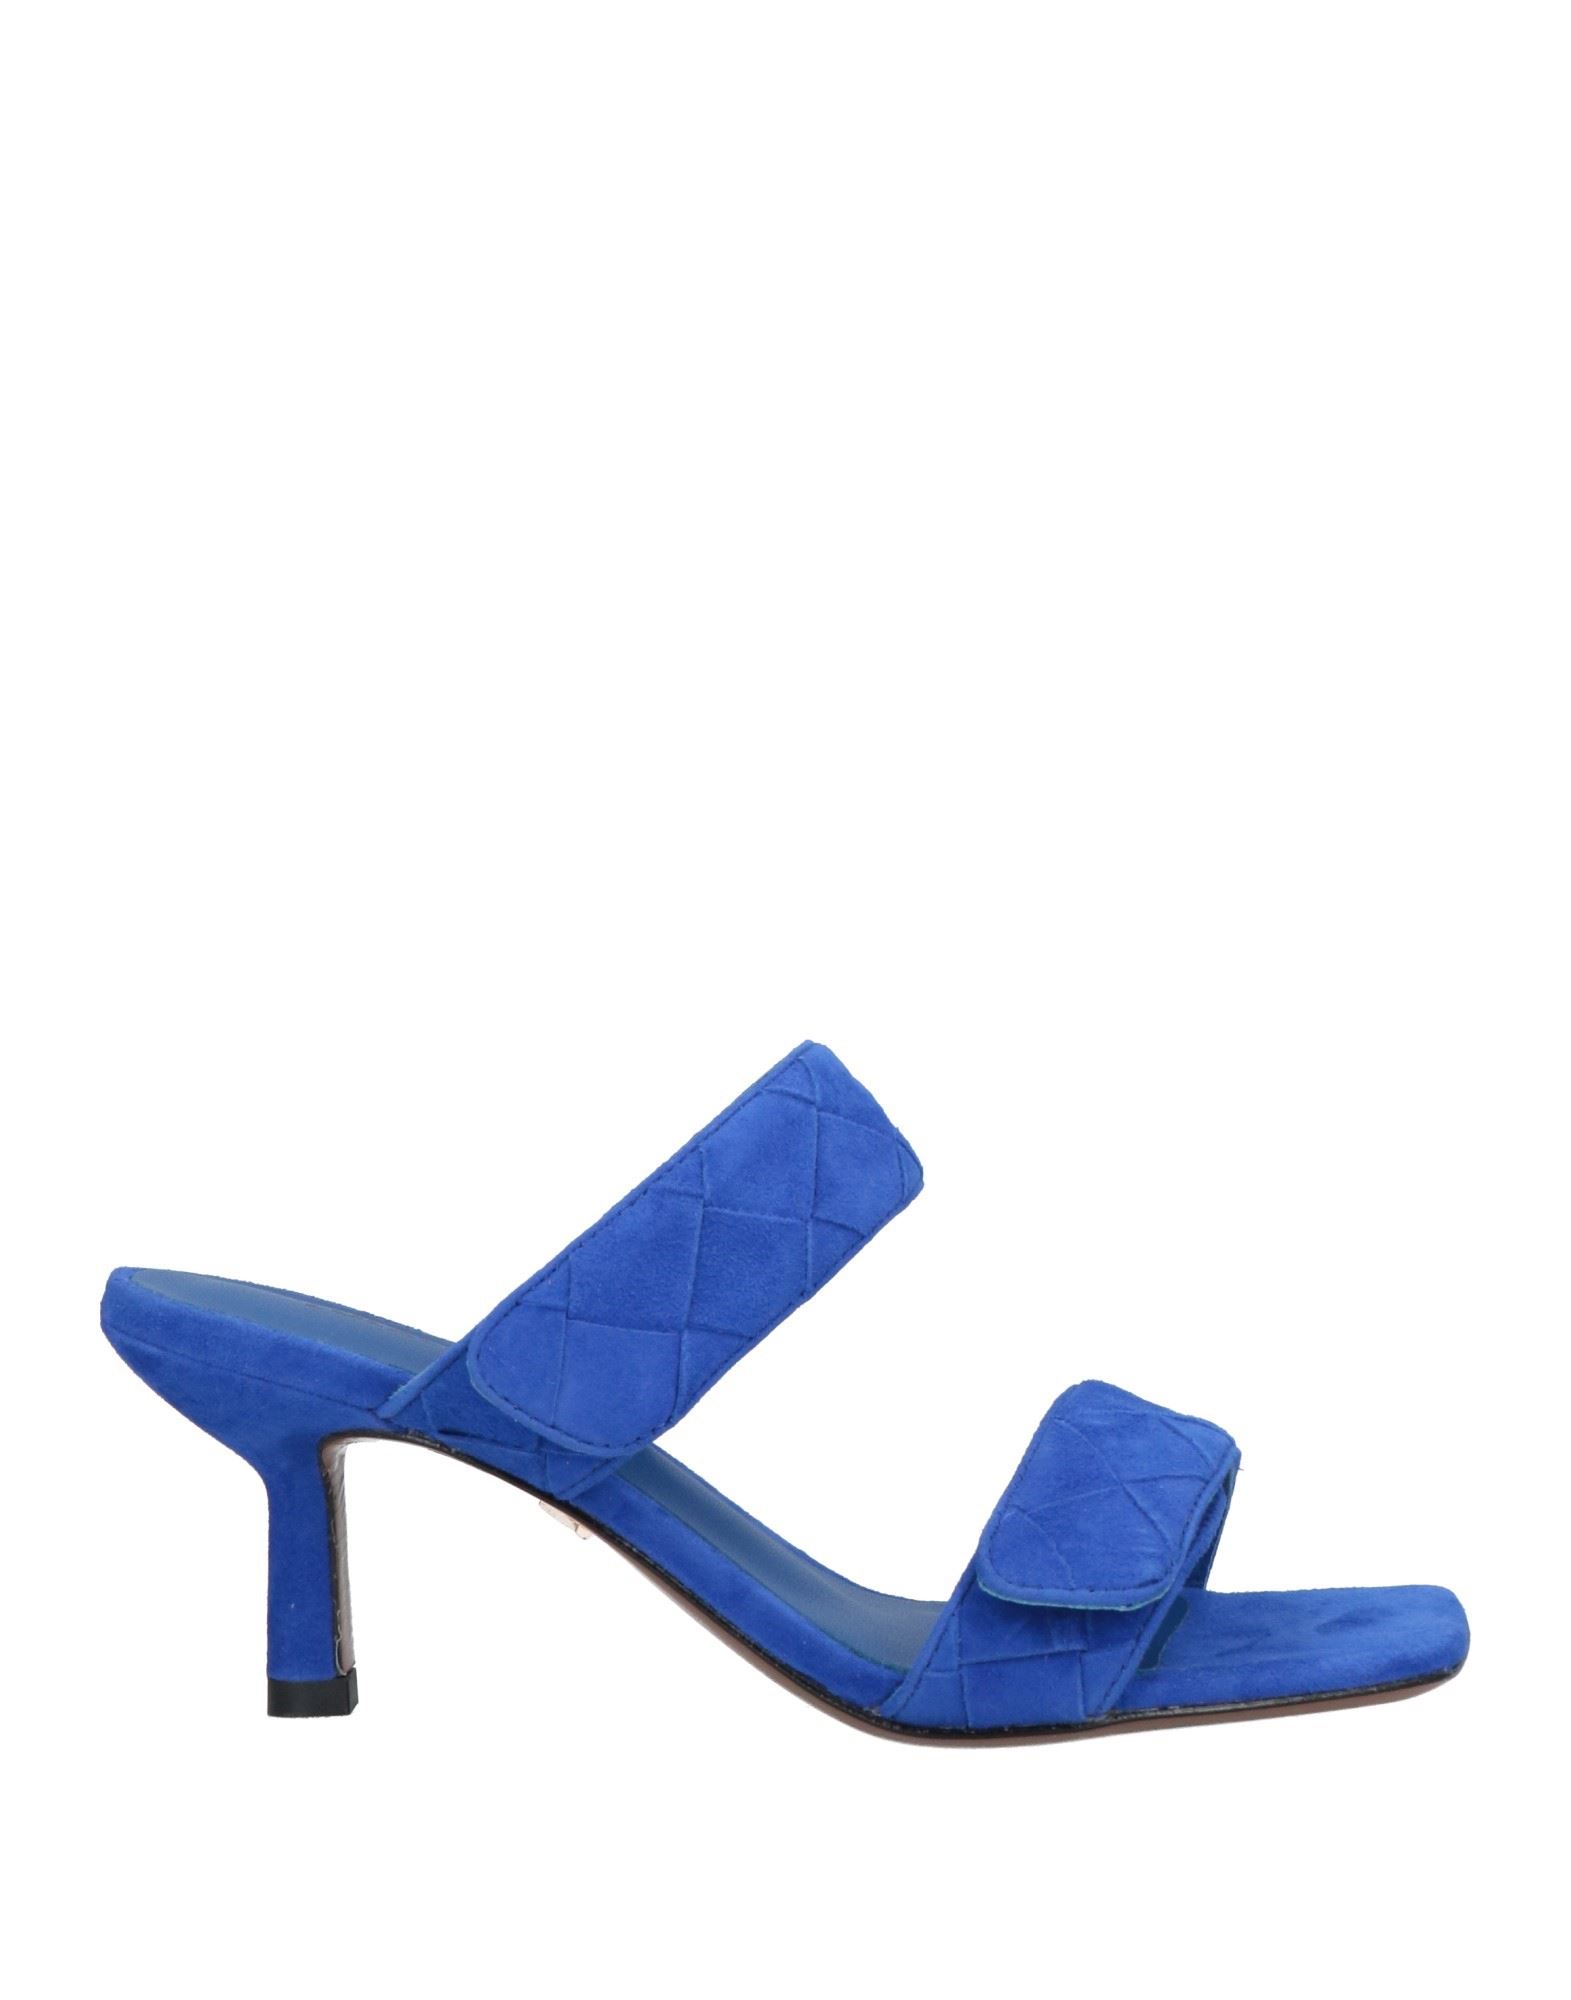 Lola Cruz Sandals In Blue